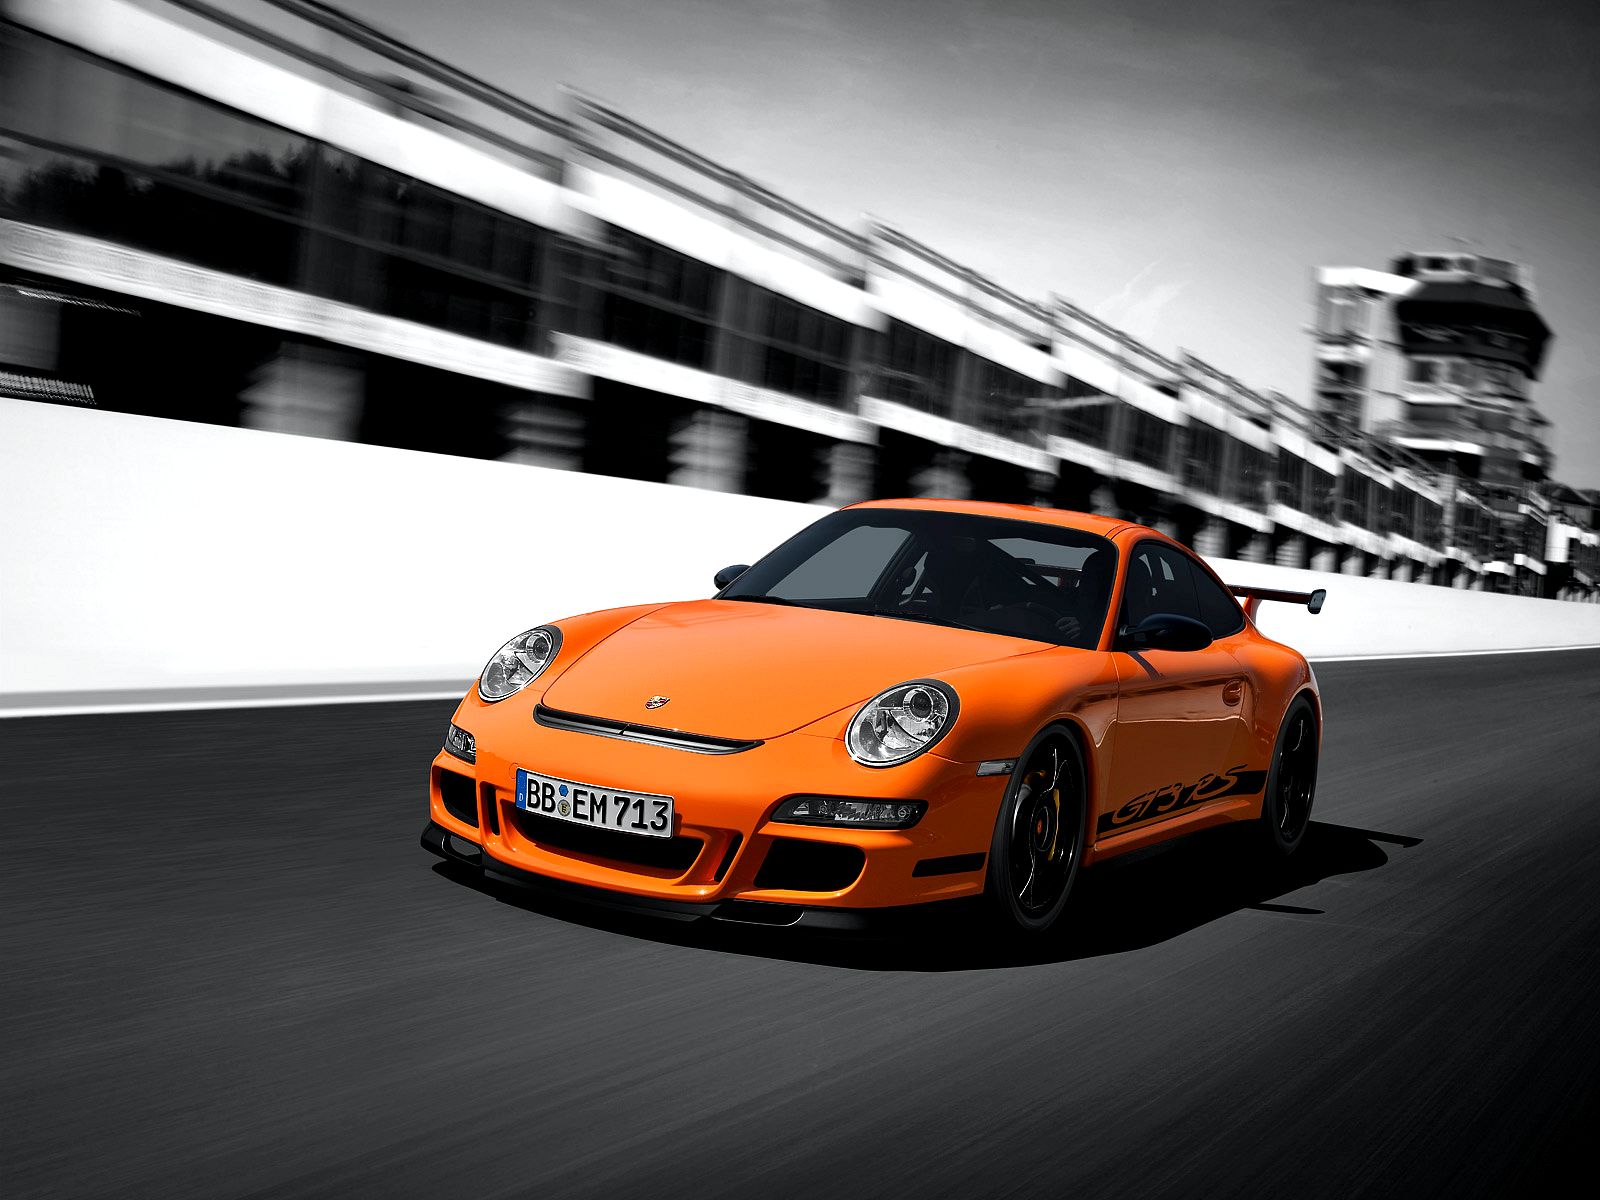 Porsche 911 Gt3 Rs Wallpaper - Porsche 911 Gt3 2009 , HD Wallpaper & Backgrounds